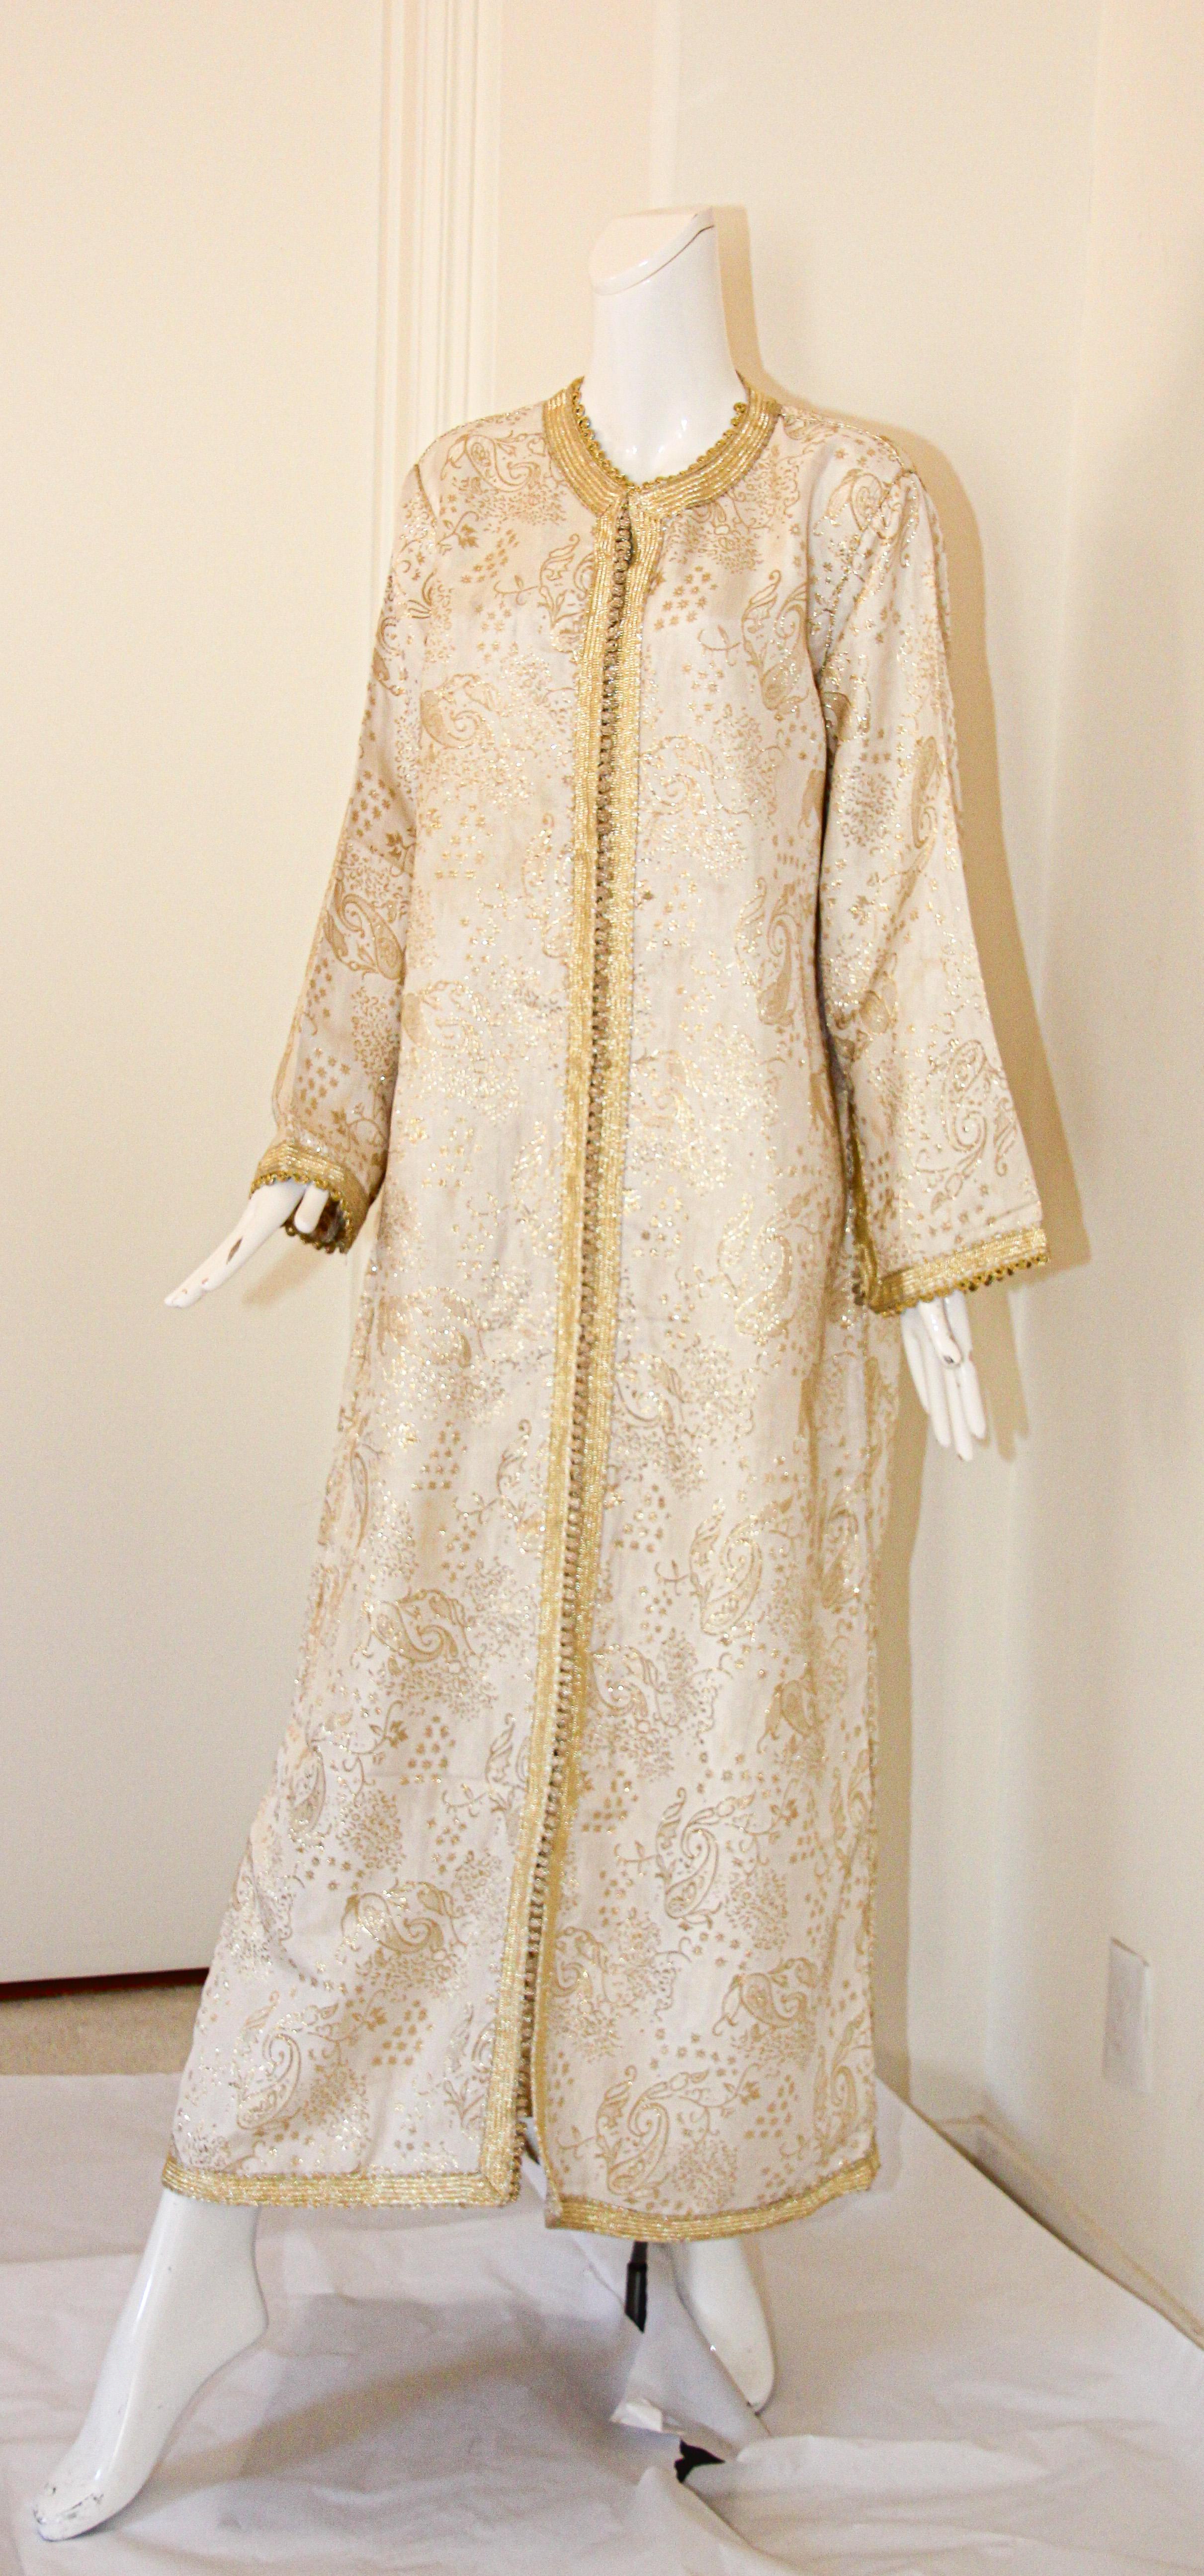 Élégant caftan marocain blanc avec brocart floral métallique doré lamé,
Il s'agit d'un exemple exceptionnel de conception de mode marocaine datant des années 1970,
Fabriqué à la main au Maroc et sur mesure pour un ajustement détendu.
Elle est garnie